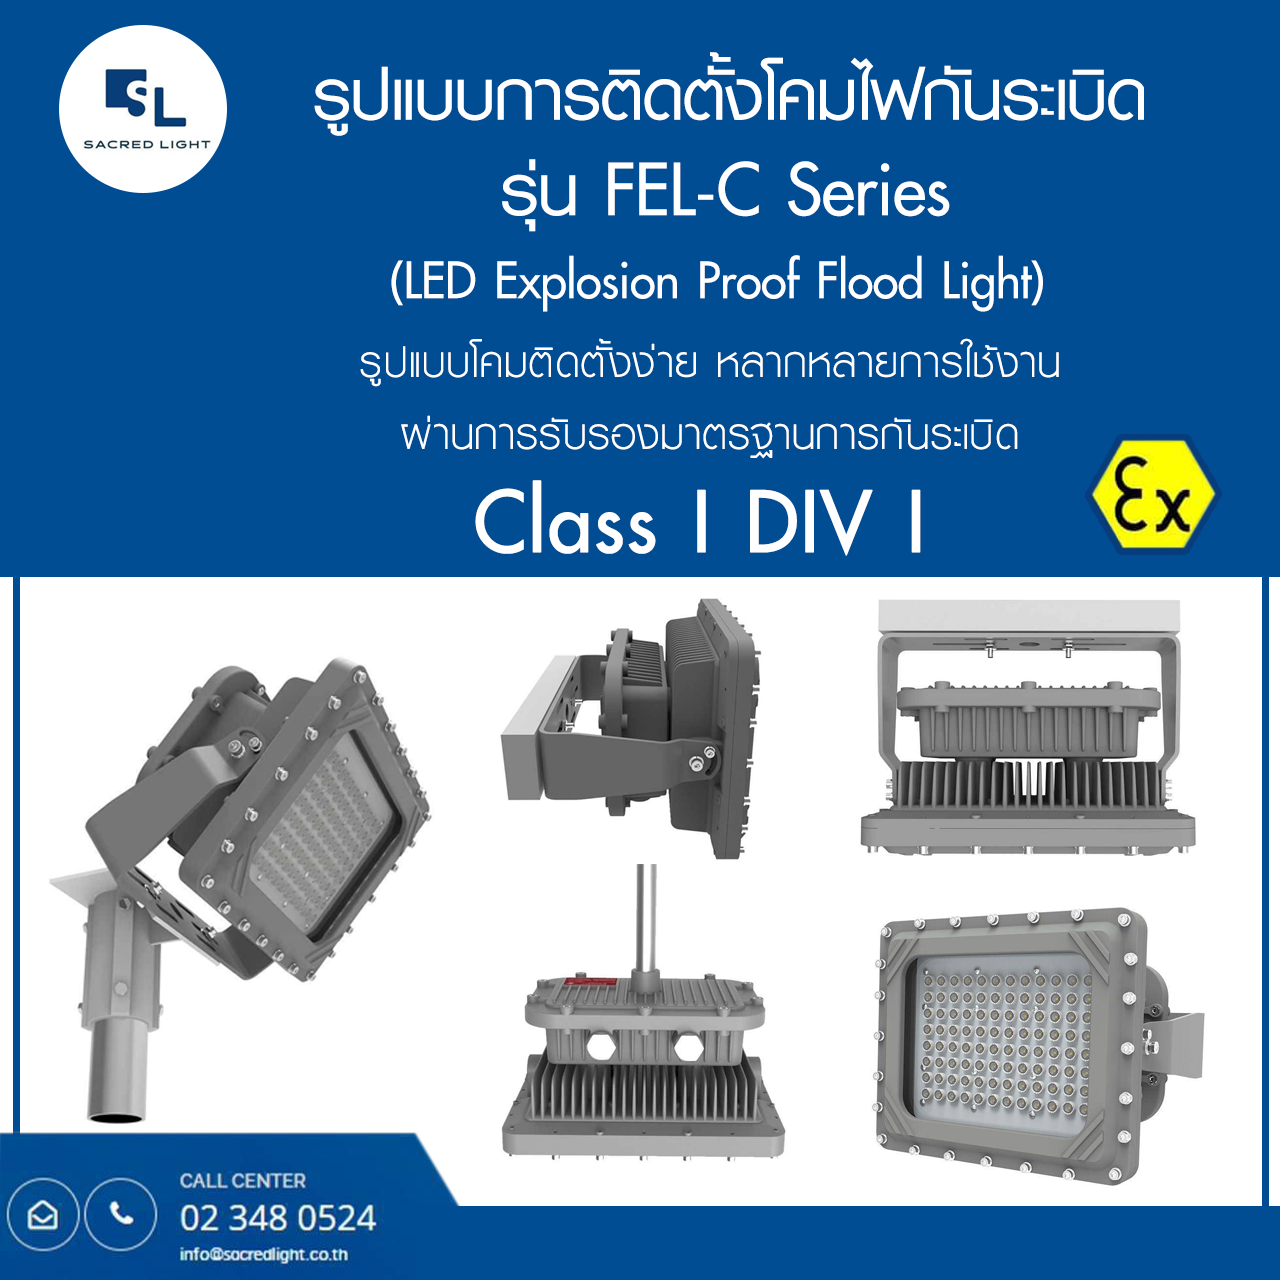 โคมไฟกันระเบิด LED (LED Explosion Proof) รุ่น SL-FEL-C Series